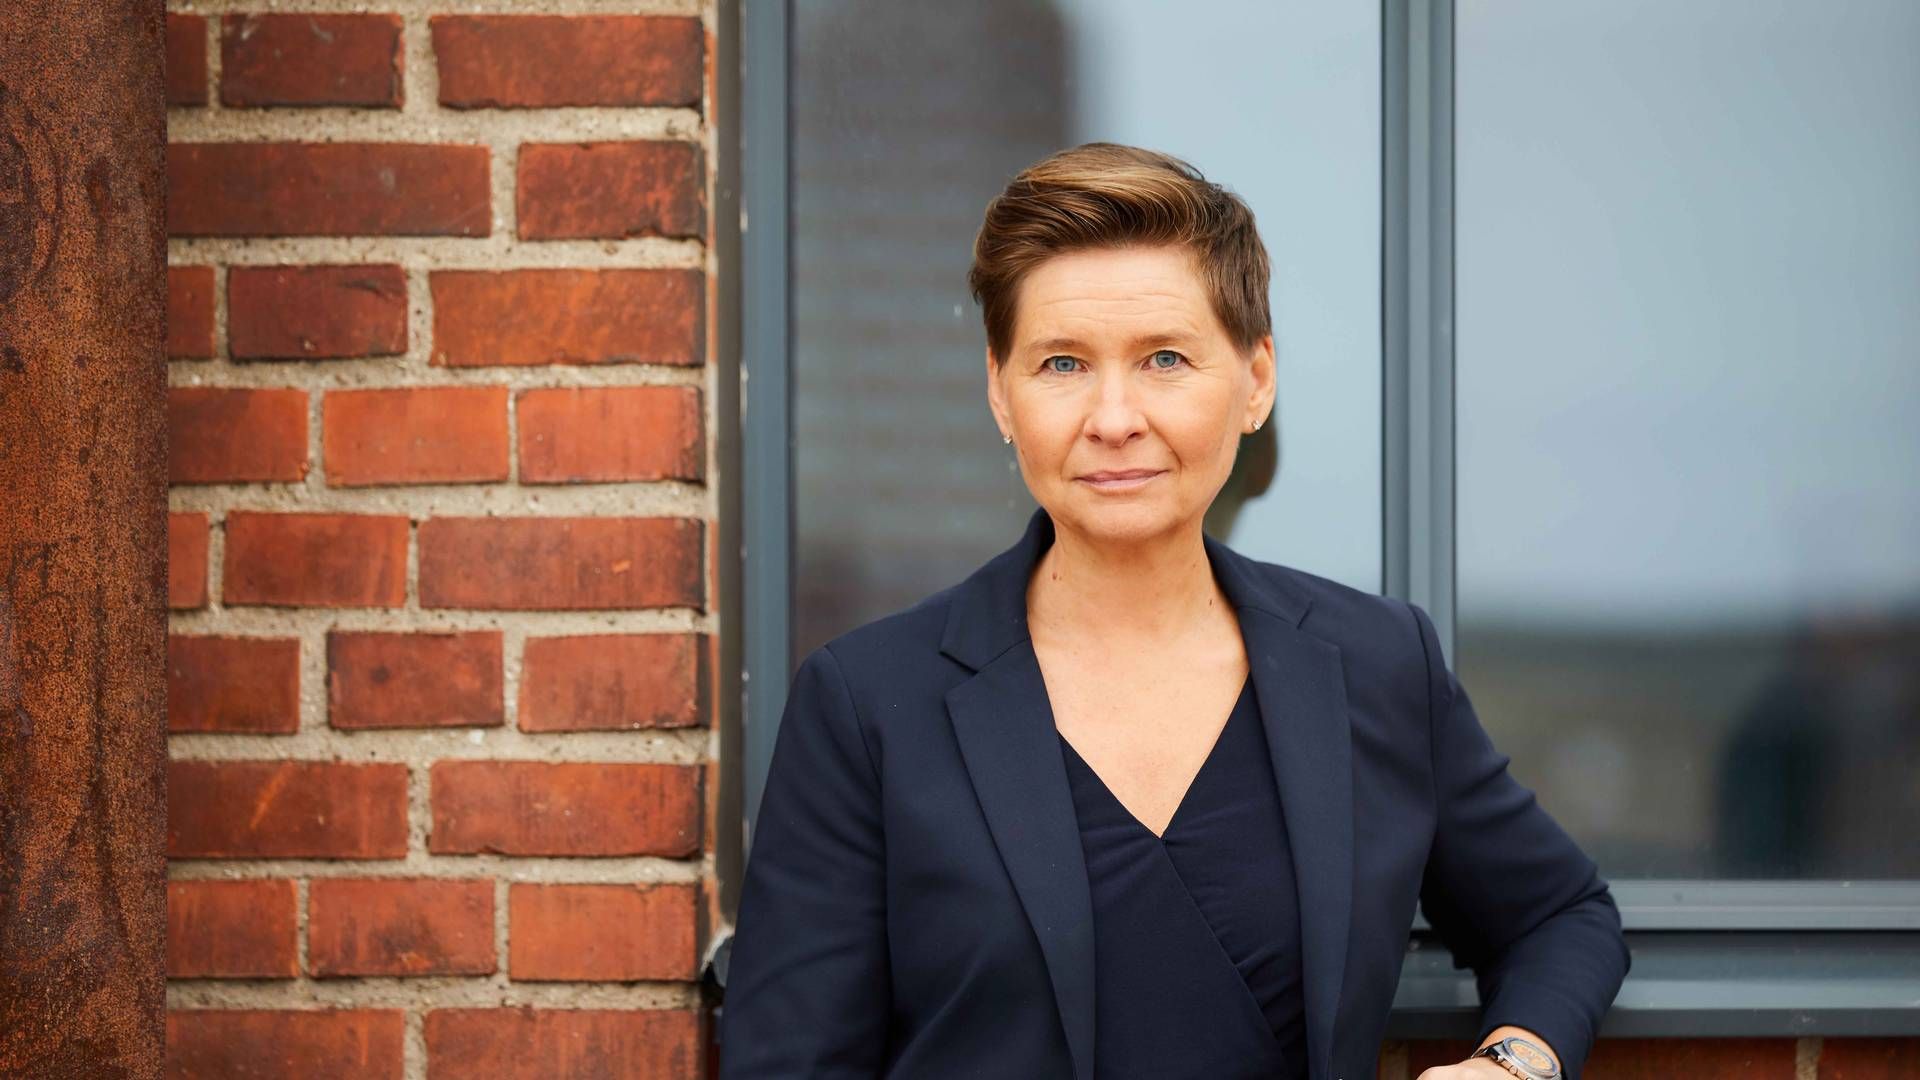 Modsat flere af sine svenske konkurrenter har Ulrika Hallengren, topchef i Wihlborgs, kun en mindre del af sin finansiering bundet i virksomhedsobligationer, hvor markedet er eroderet. | Foto: PR / Wihlborgs